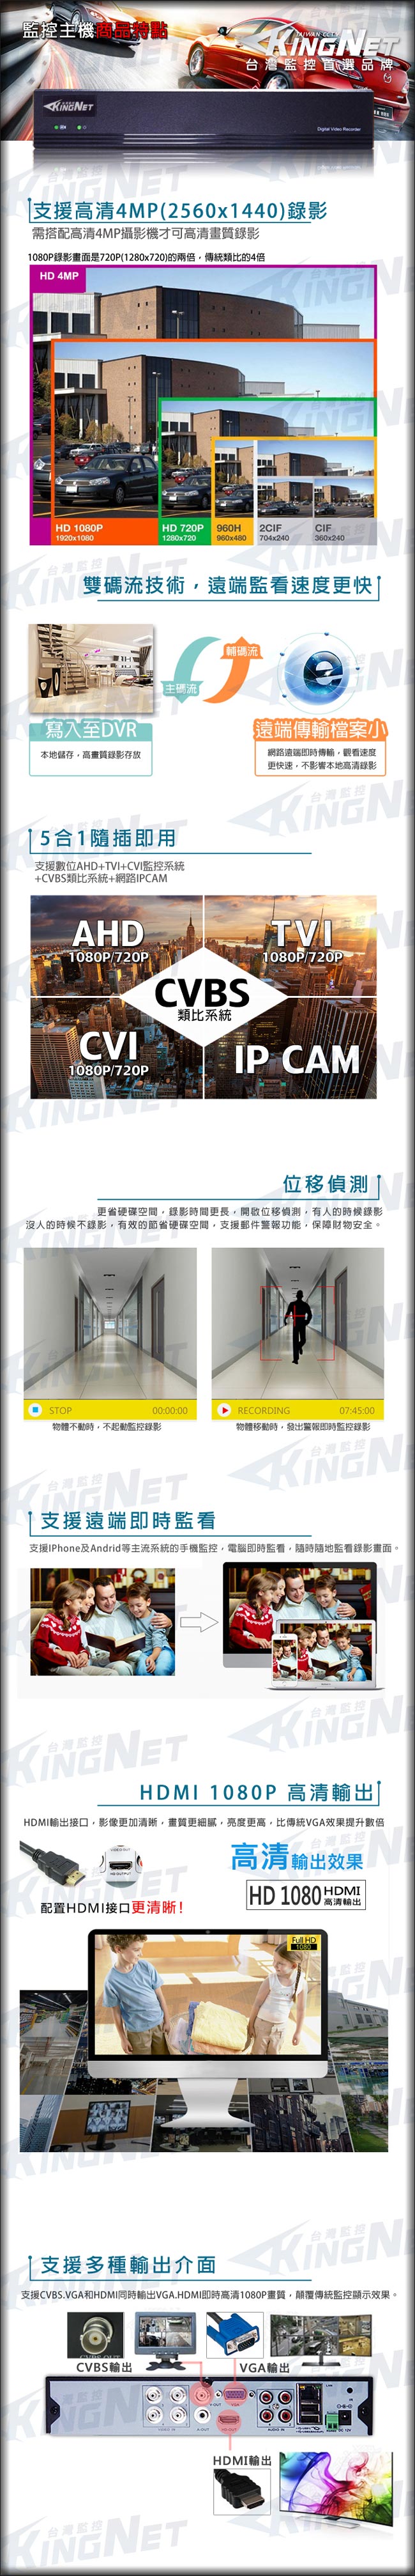 監視器攝影機 KINGNET 4路4MP監控主機 + 3支 HD 1080P 室內半球